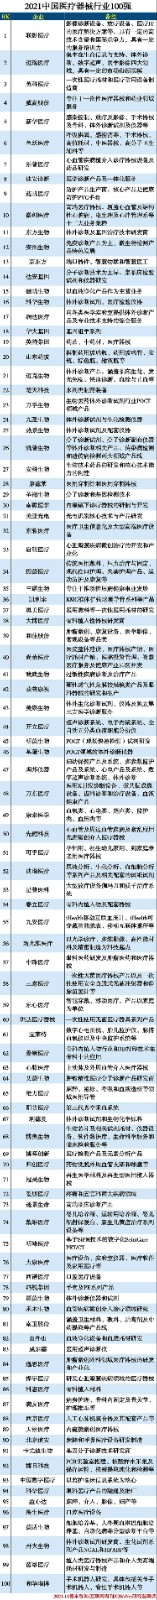 榜单｜2021年中国医疗器械行业百强榜公布